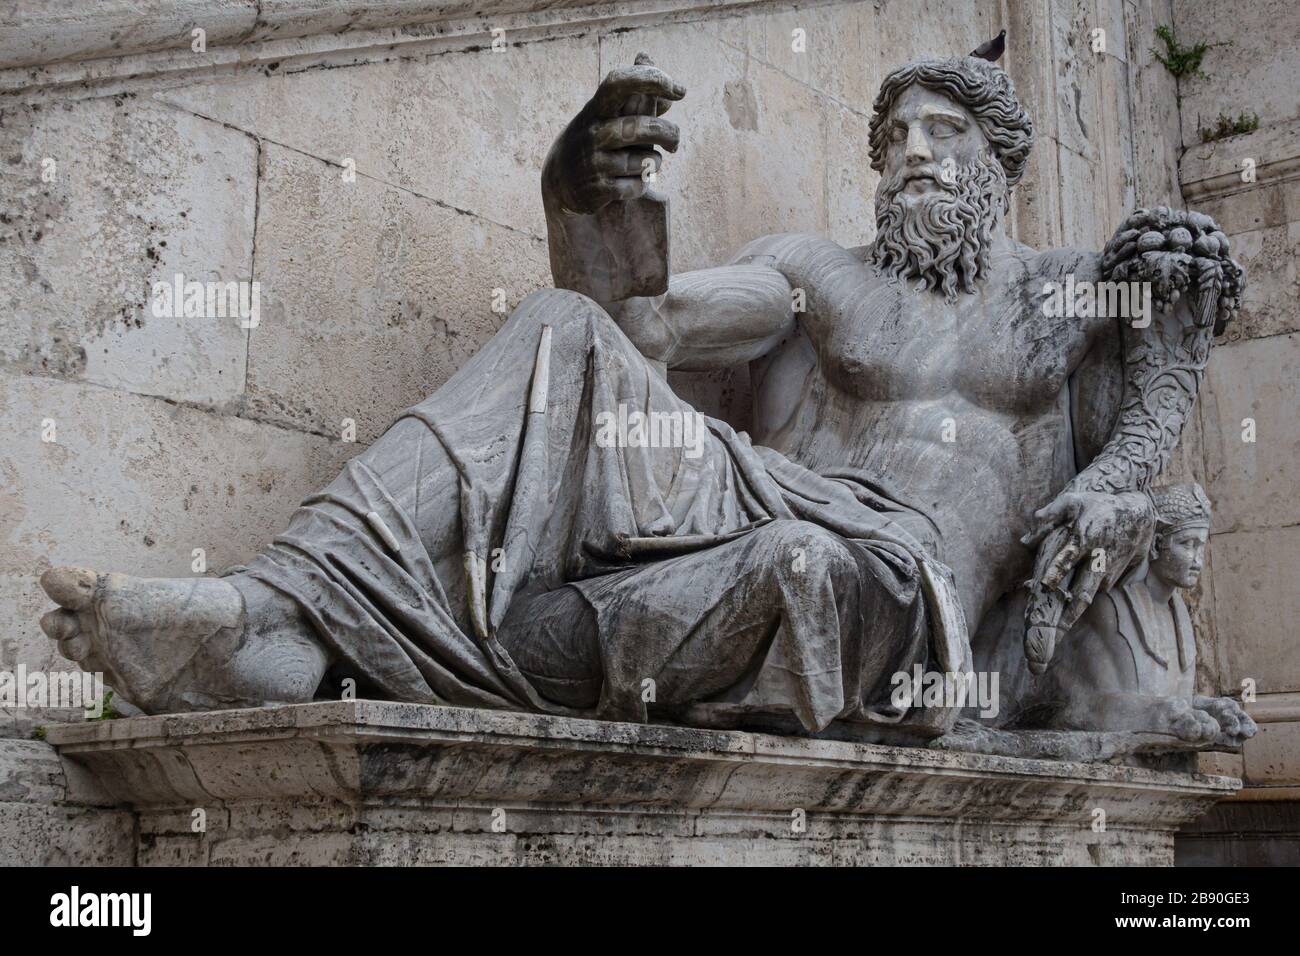 Statue romaine antique de Neptune qui semble prendre un selfie. Photo libre de droit. Banque D'Images